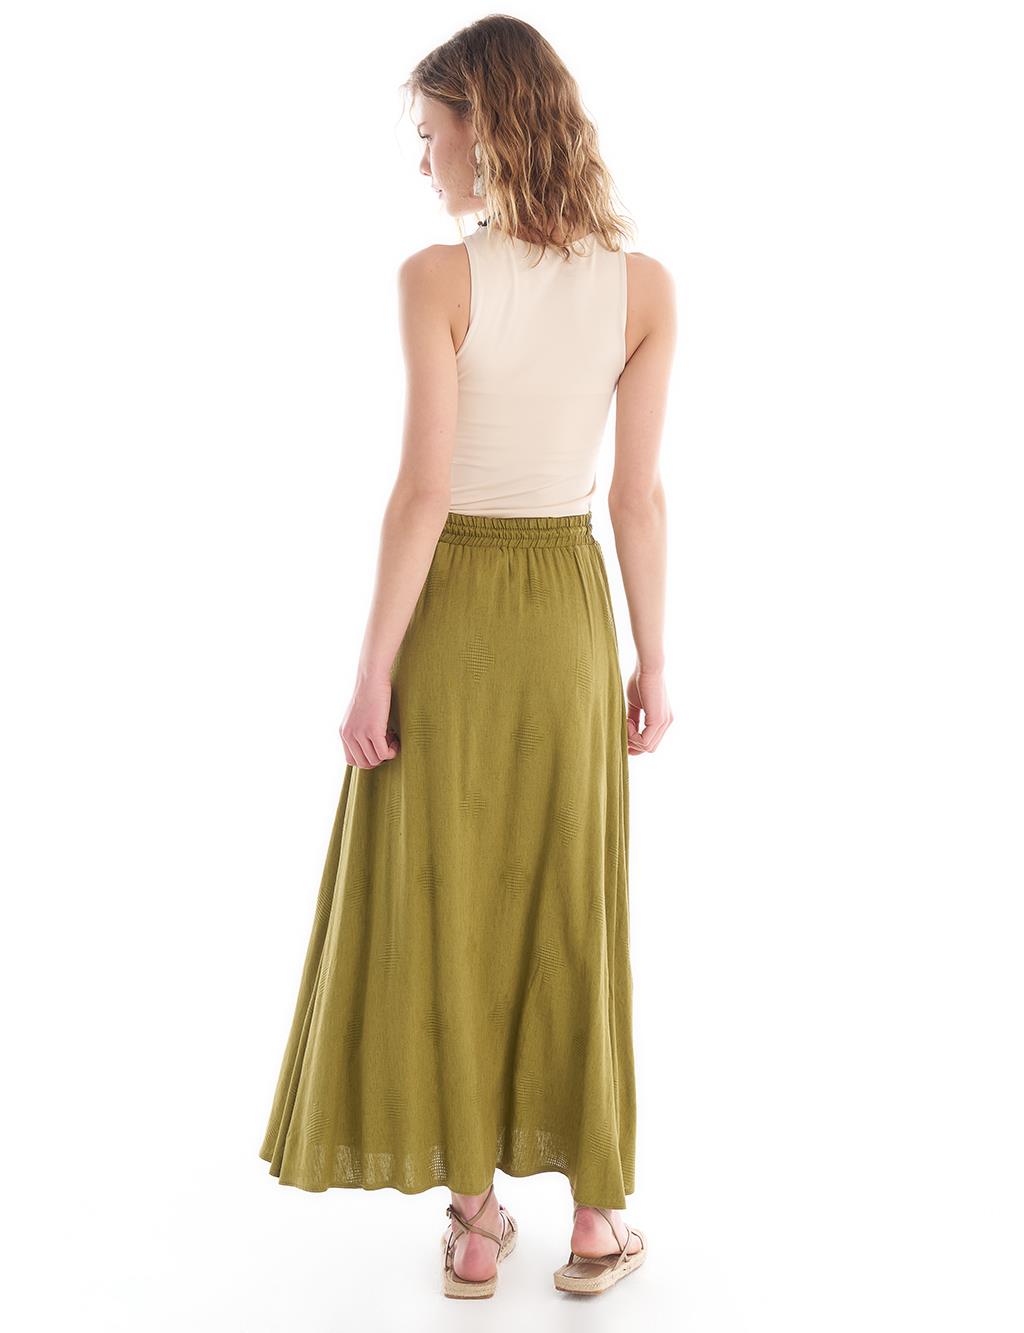 Tasseled Elastic Waist Linen Skirt Khaki